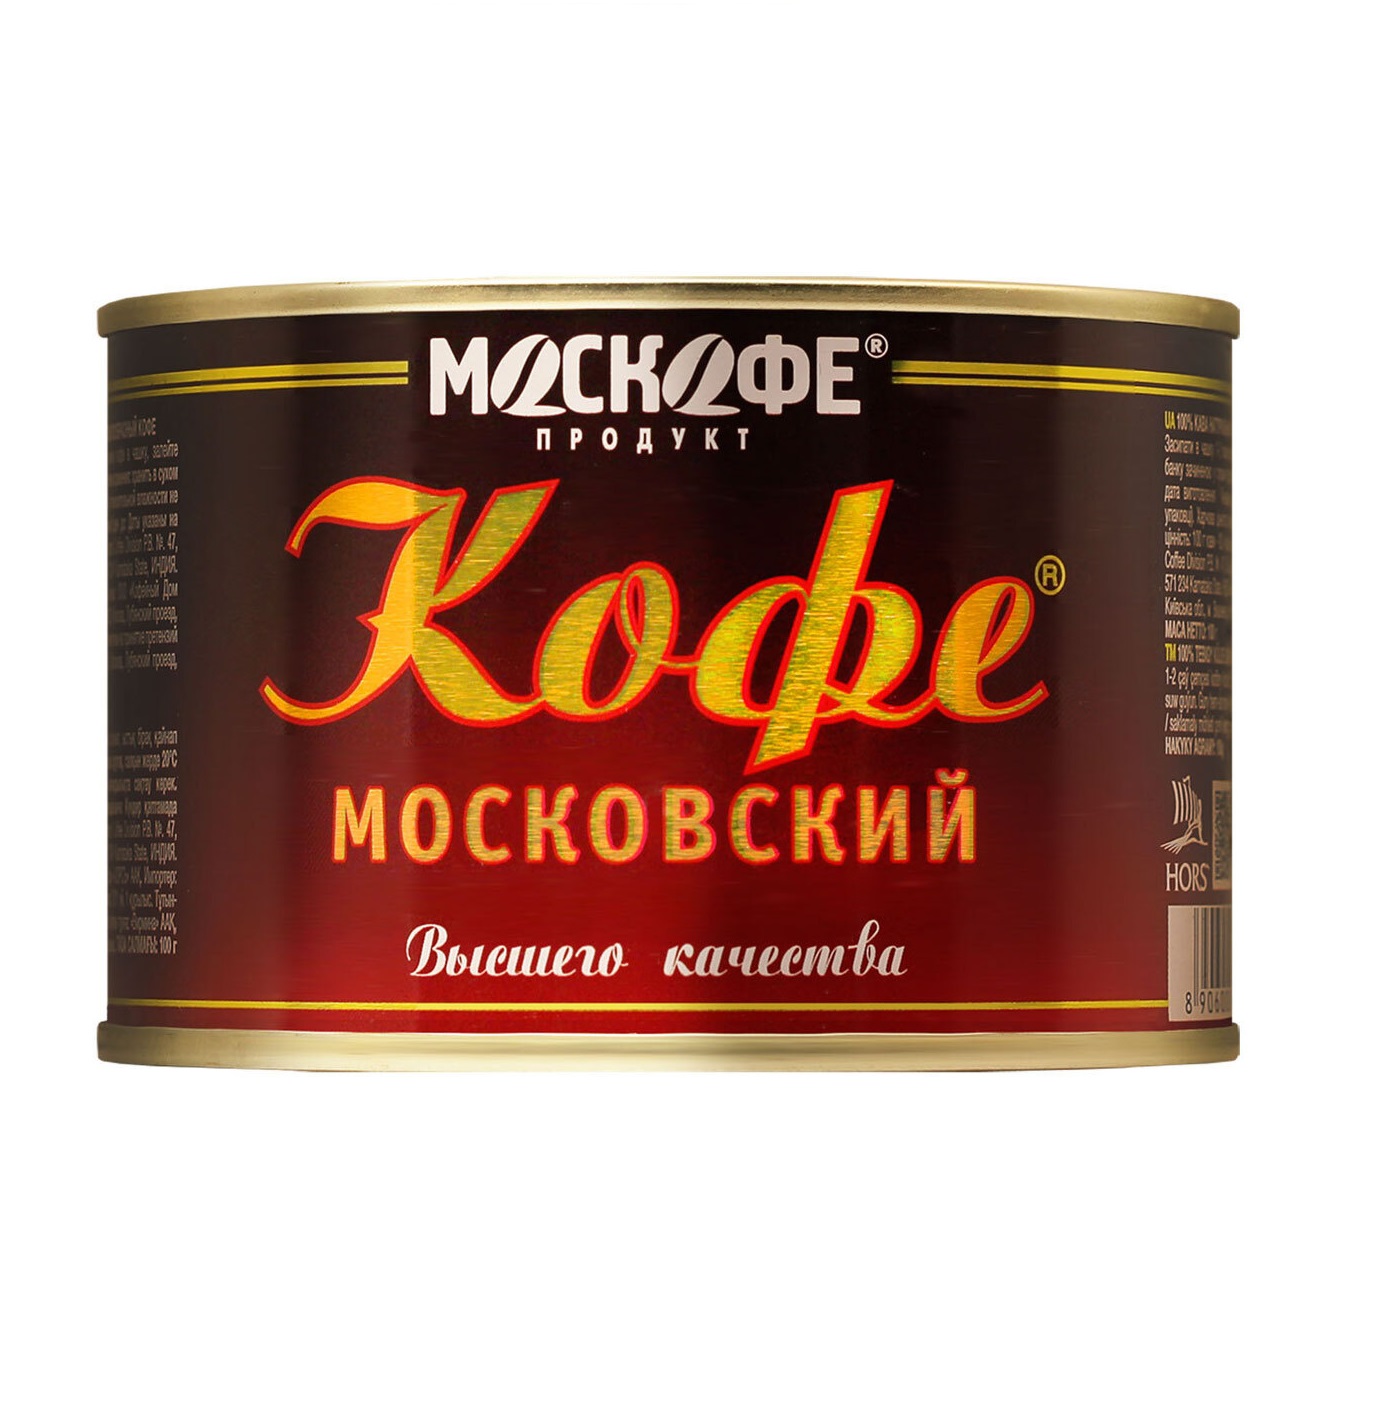  Кофе Москофе московский порошок